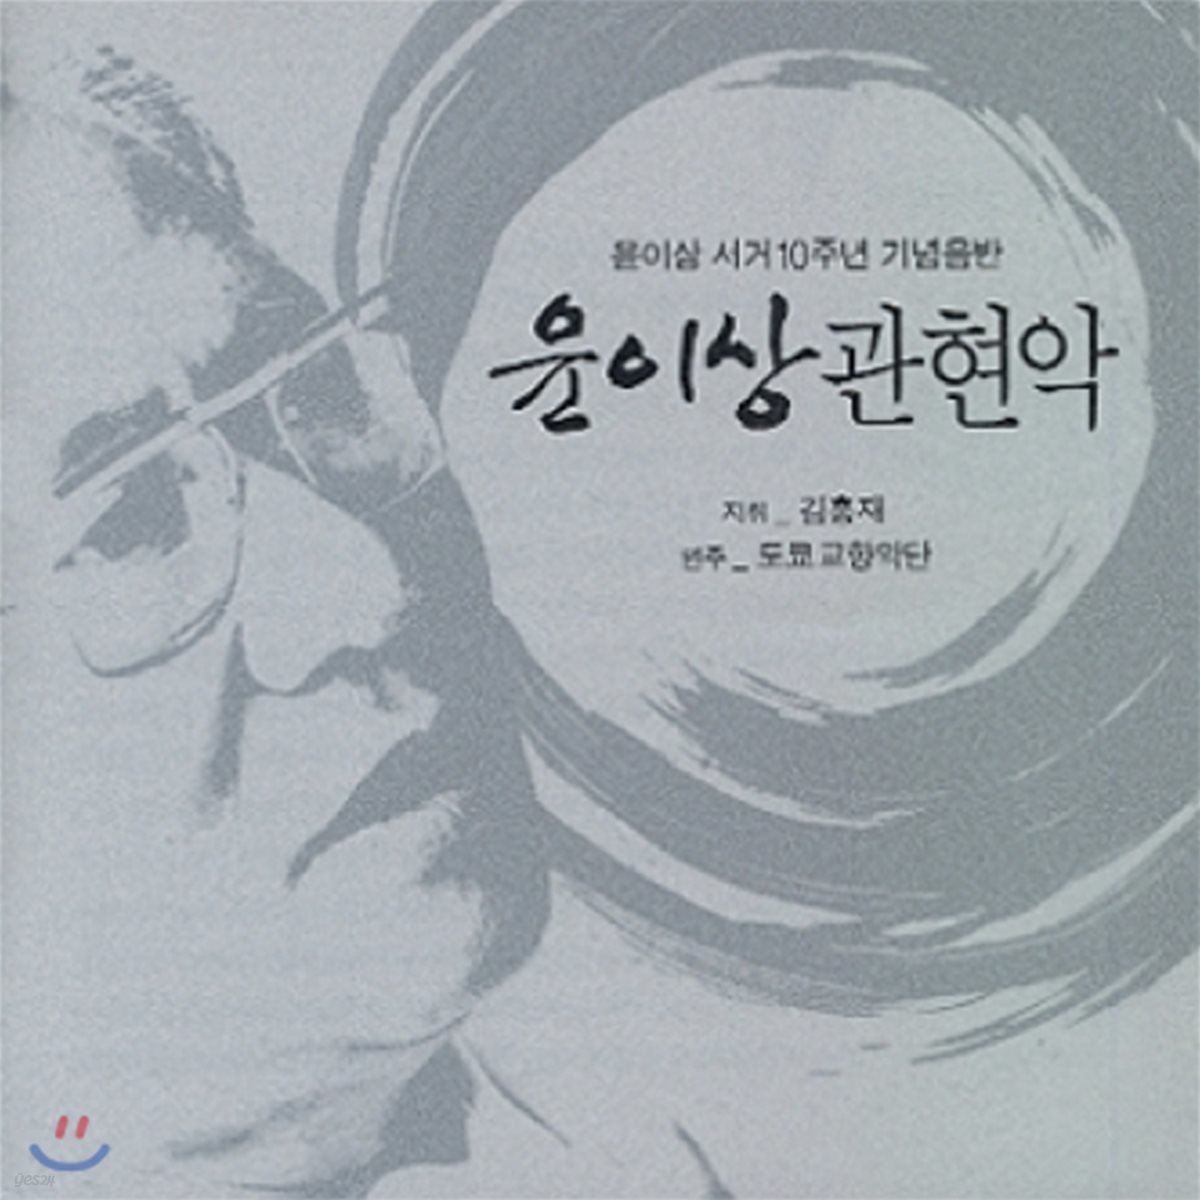 김홍재 / 도쿄 교향악단 - 윤이상 서거 10주년 추모 음반